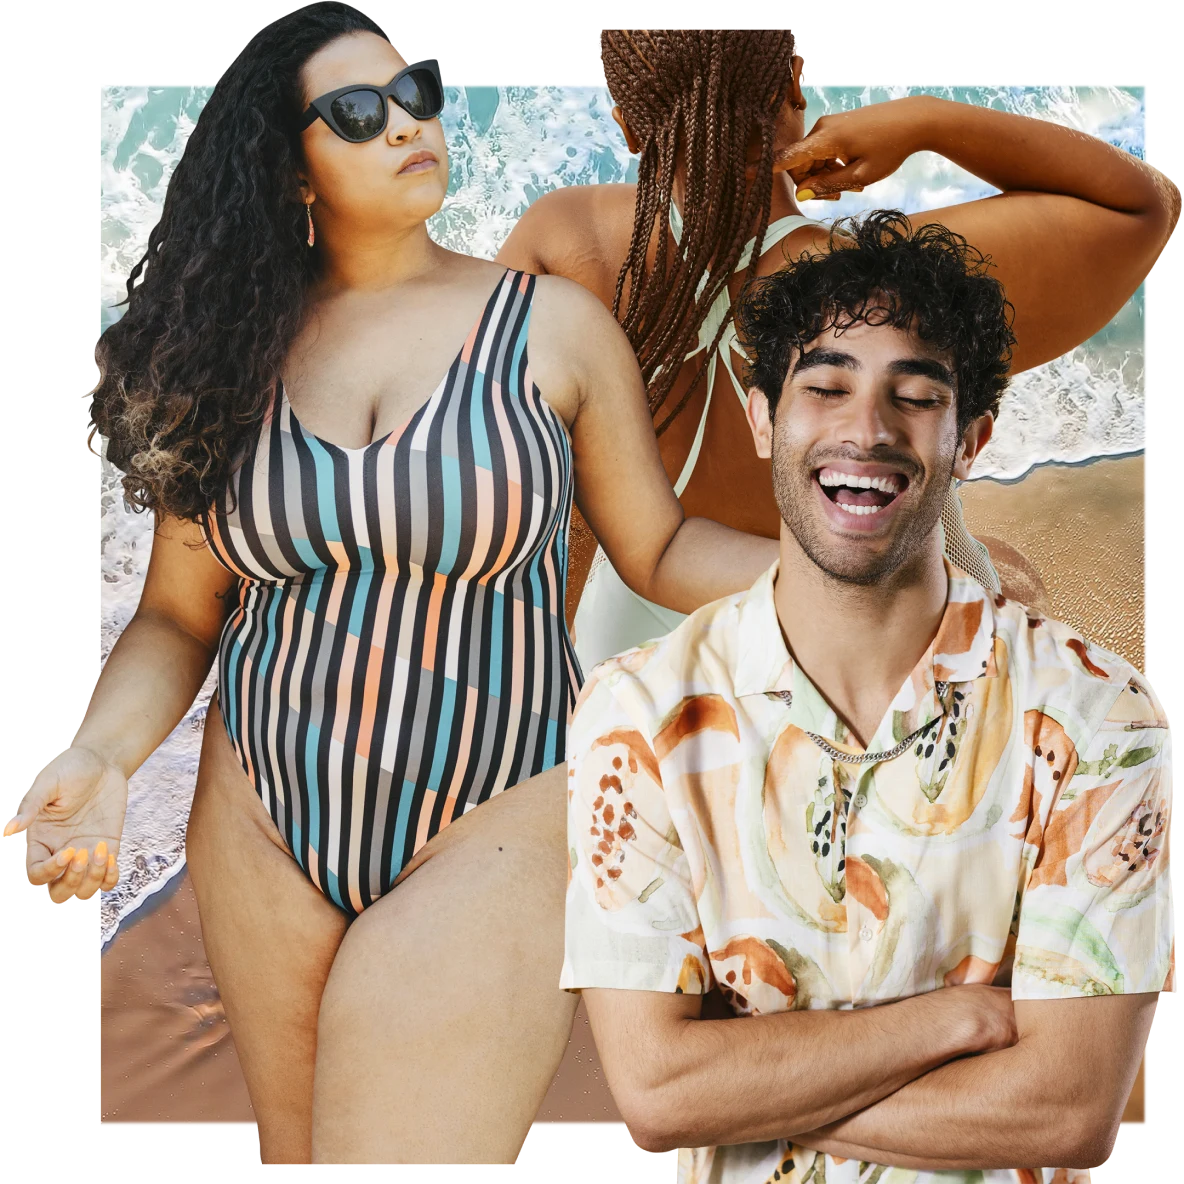 Eine Collage mit Menschen, die fertig für den Strand sind: eine Frau mit Sonnenbrille in einem gestreiften Badeanzug. Ein lachender Mann in einem kurzärmeligen Hemd mit Papaya-Muster. Eine Frau mit Braids, die in Richtung Meer läuft.